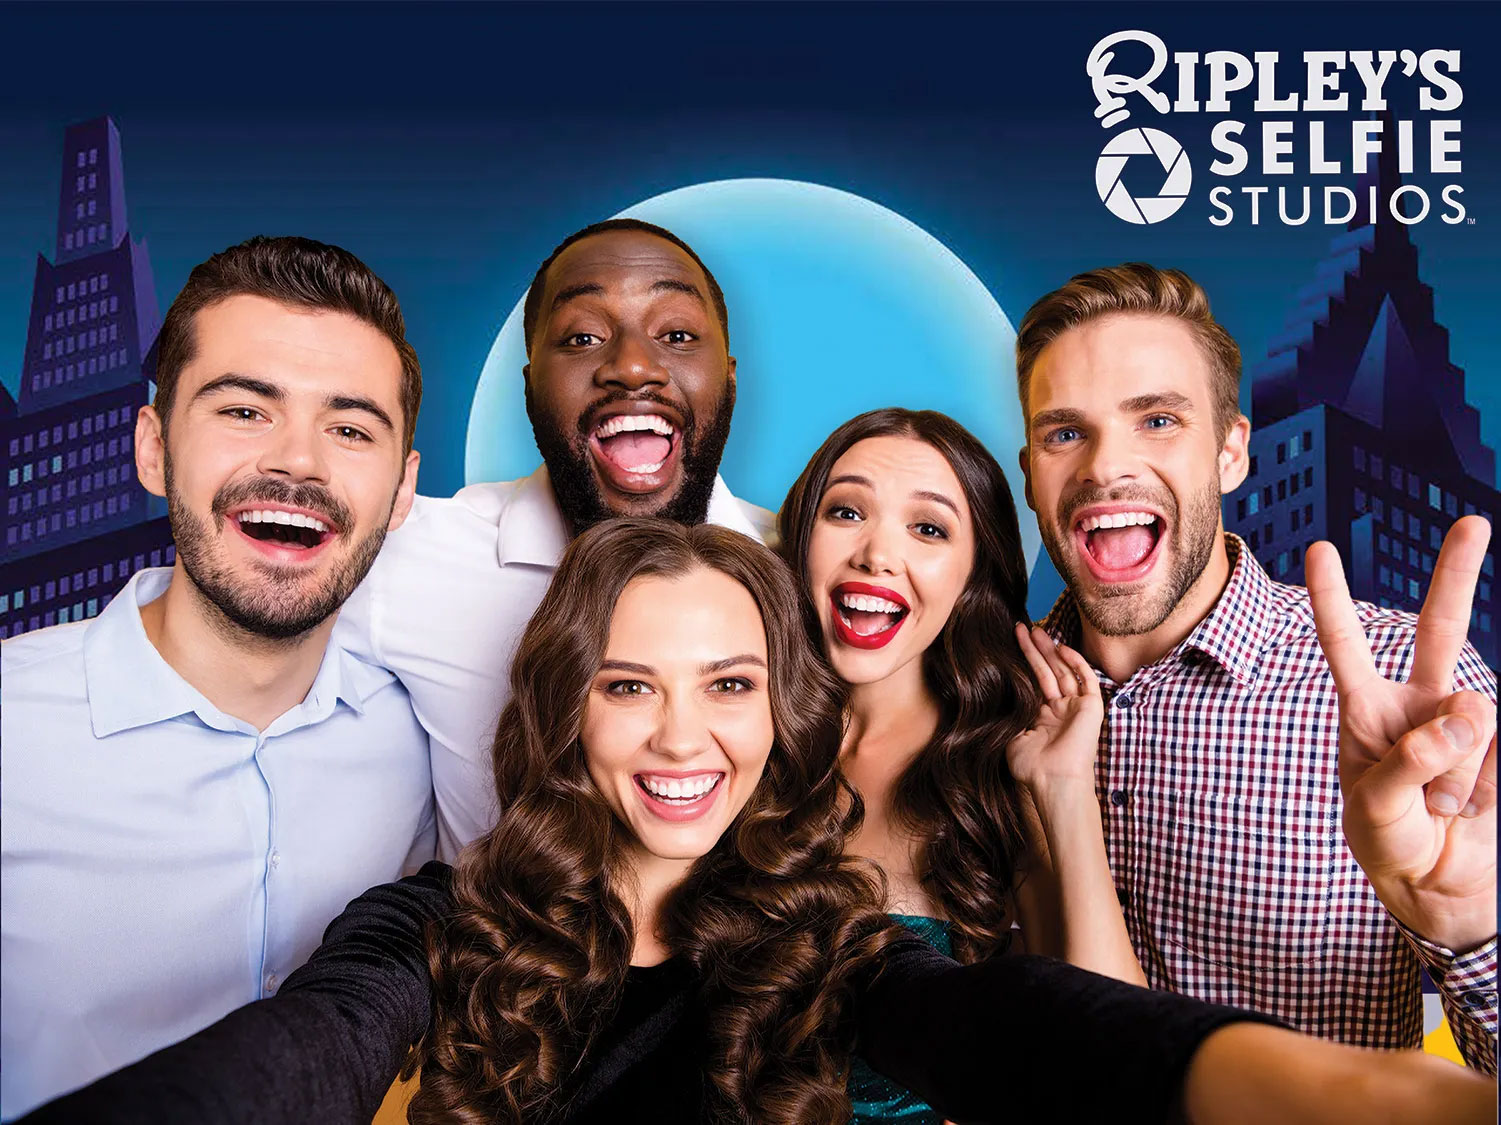 Ripleys Selfie Studio Friends on Set